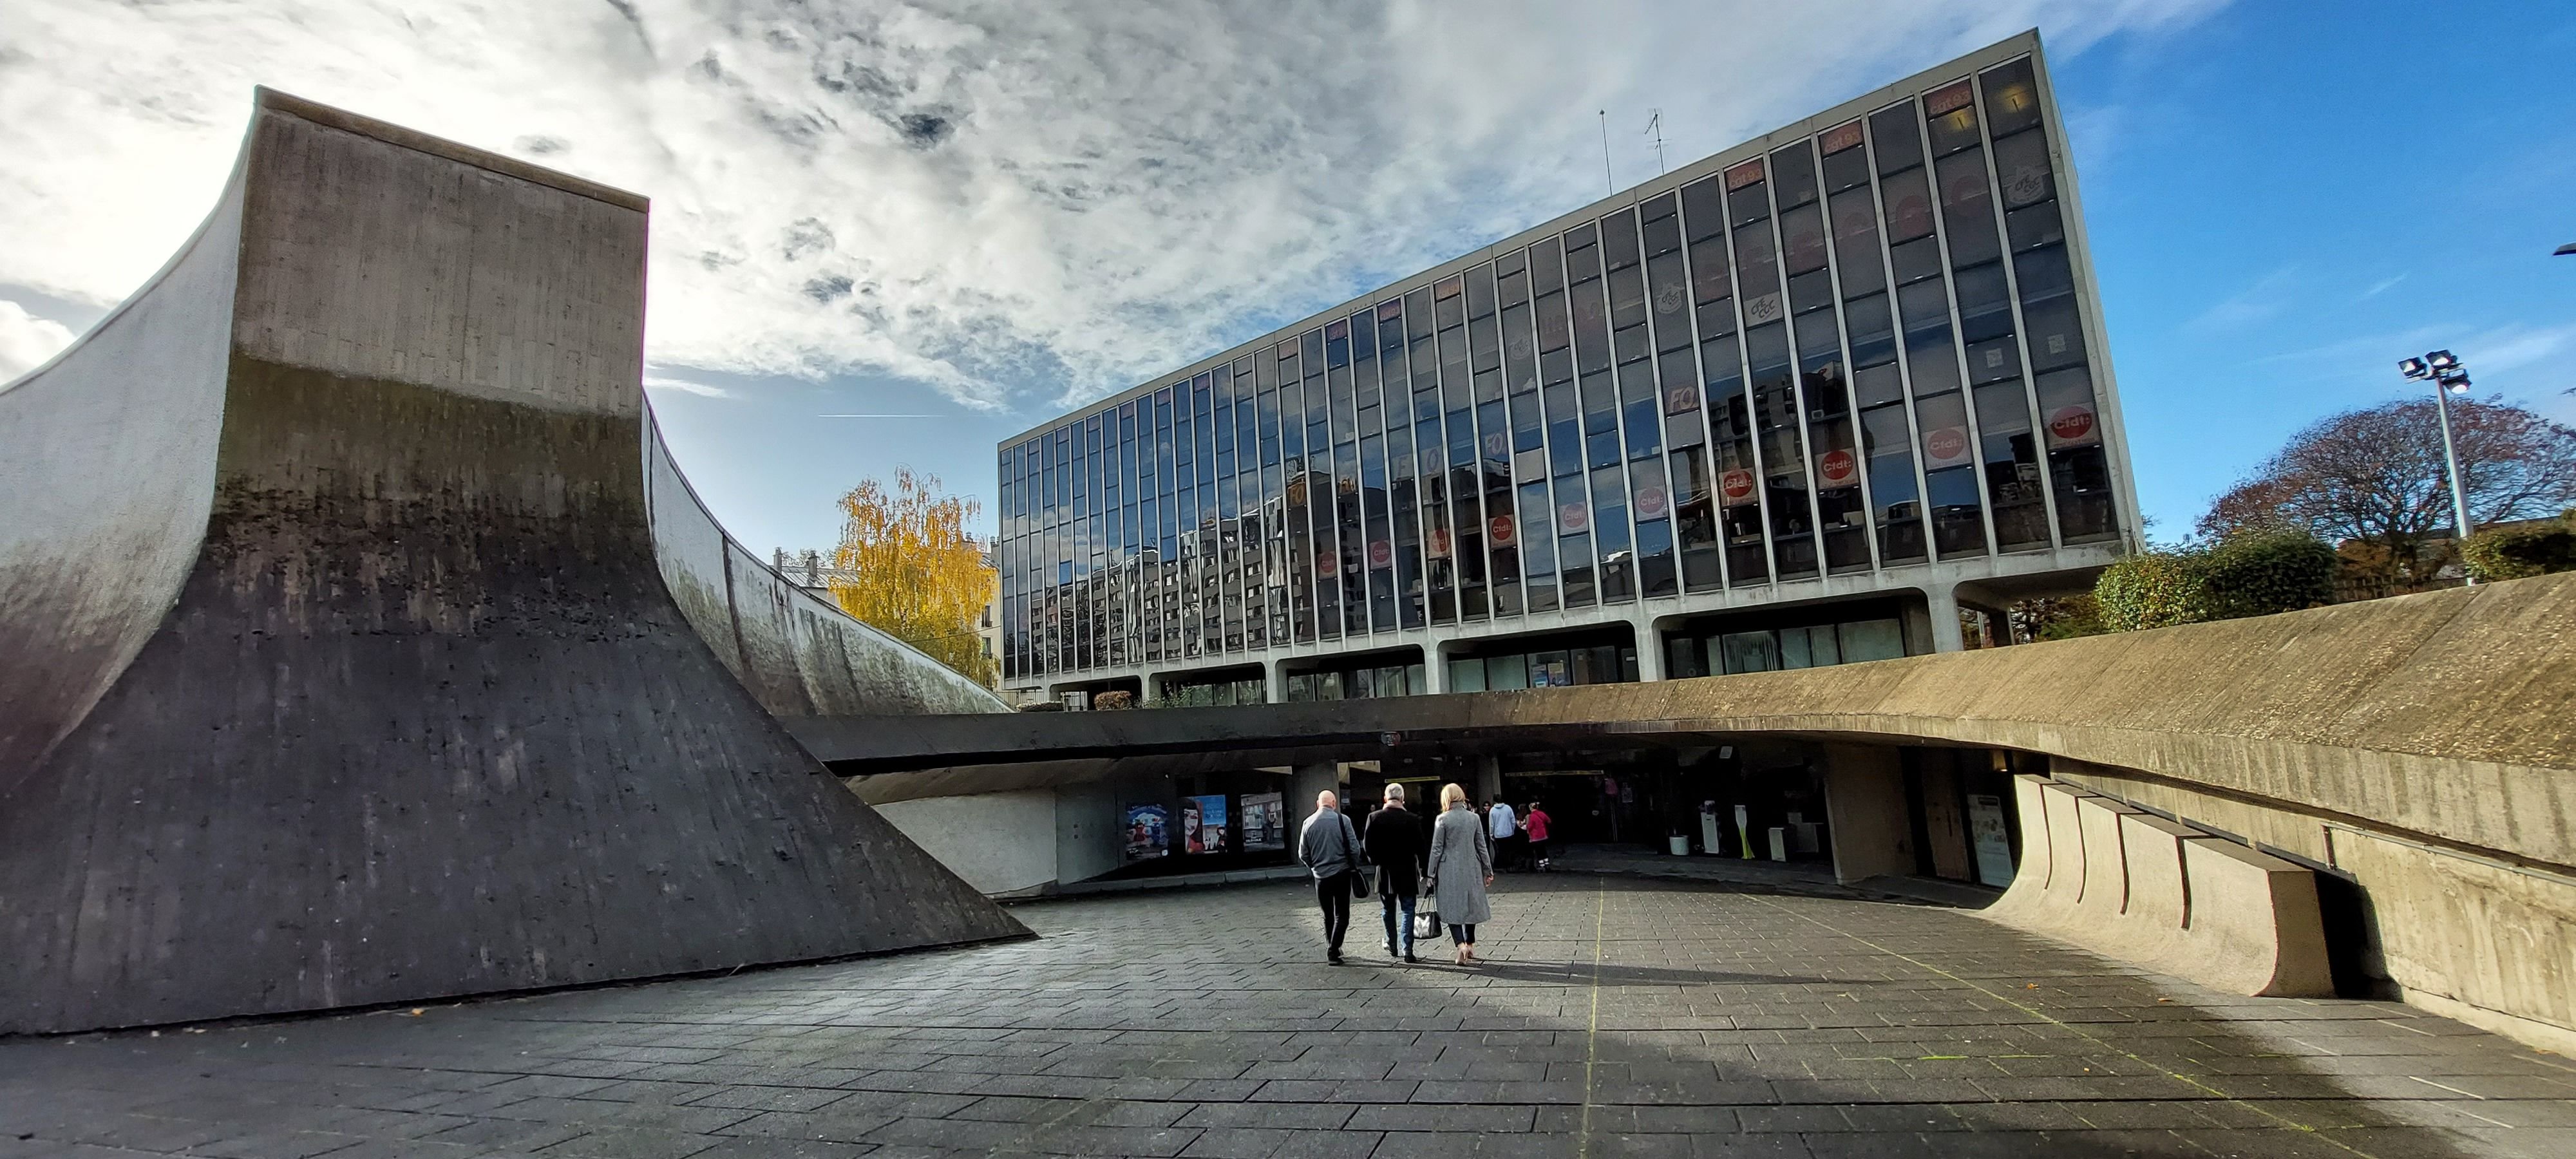 Bobigny (Seine-Saint-Denis), le 17 novembre. La Bourse départementale du travail Clara-Zetkin est l’œuvre du célèbre architecte brésilien Oscar Niemeyer. LP/C.G.